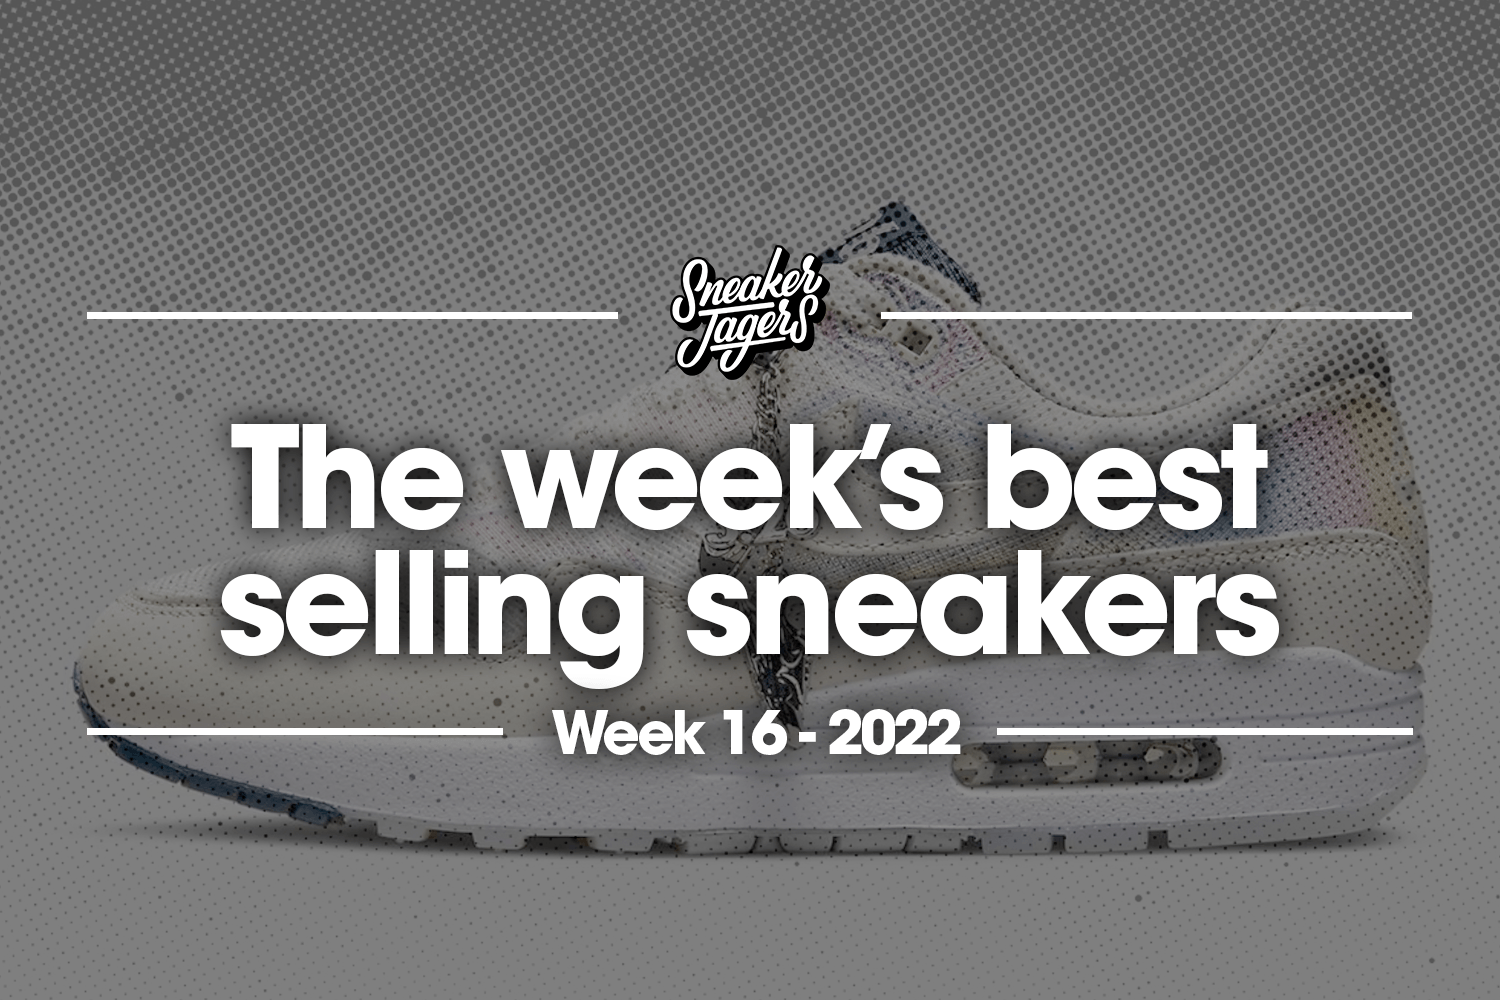 De 5 bestverkochte sneakers van week 16